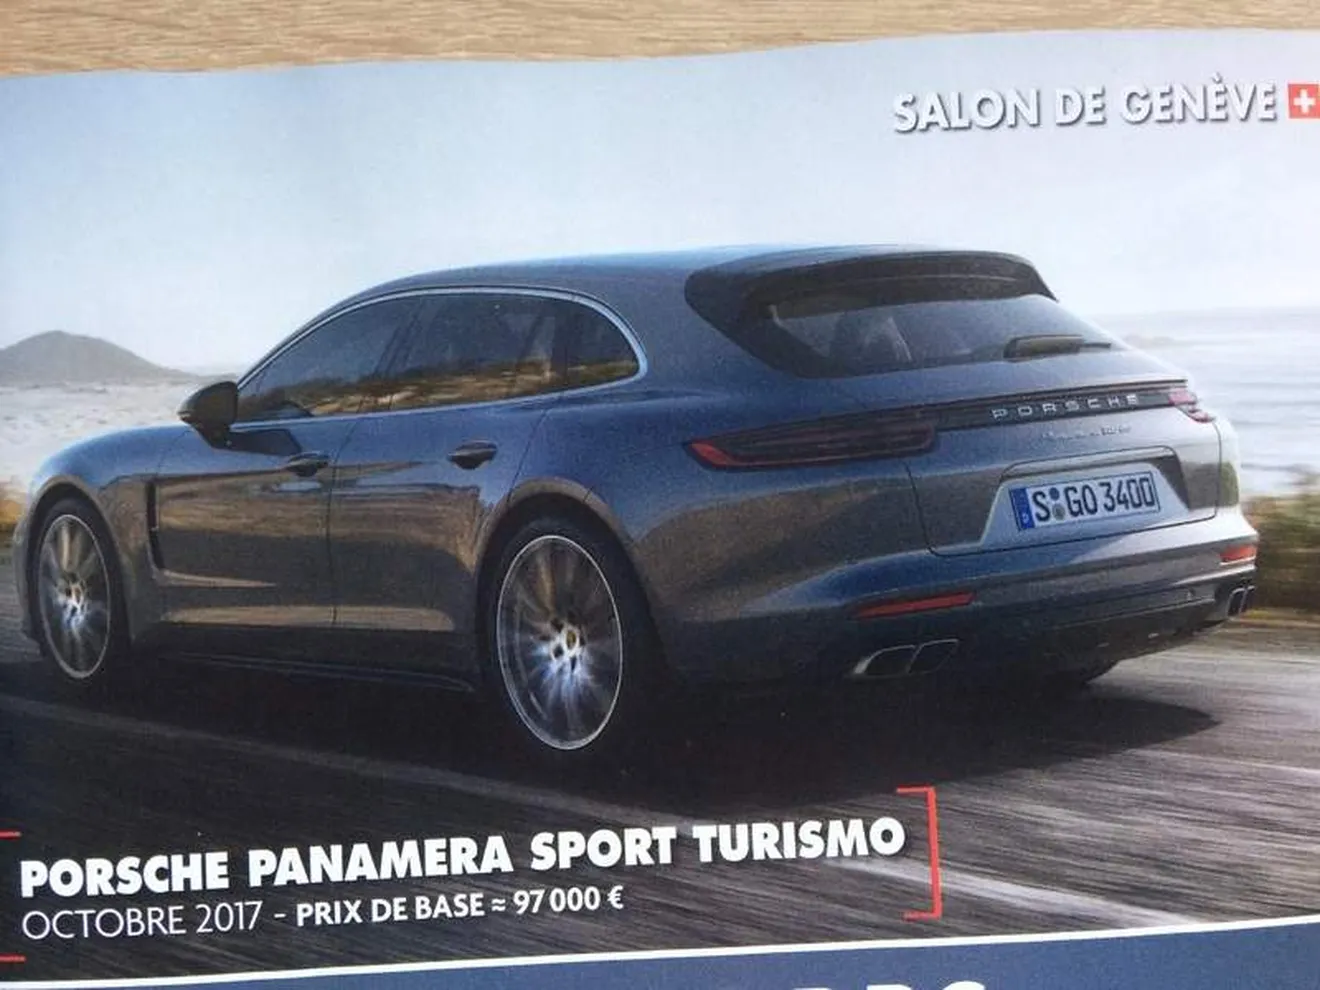 ¿Eres tú el definitivo Porsche Panamera Sport Turismo?